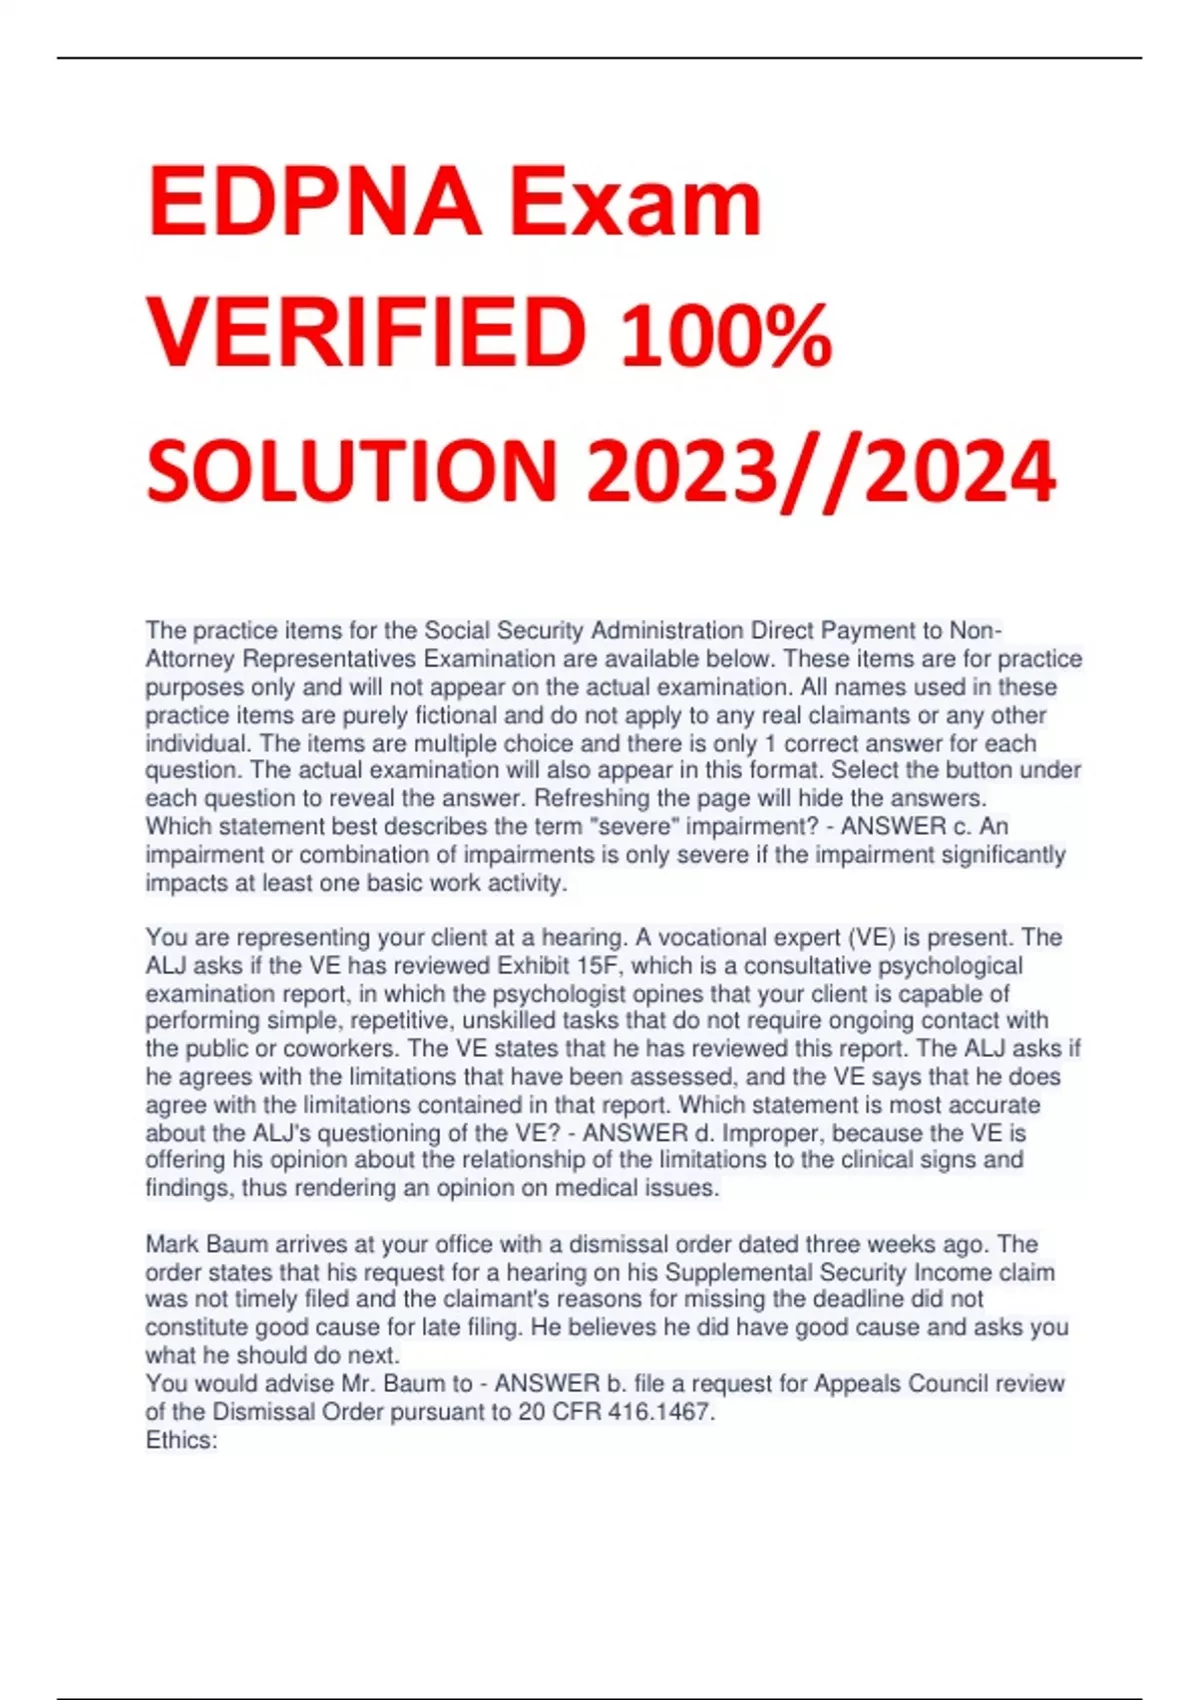 EDPNA Exam VERIFIED 100% SOLUTION 2023//2024 - EDPNA - Stuvia US